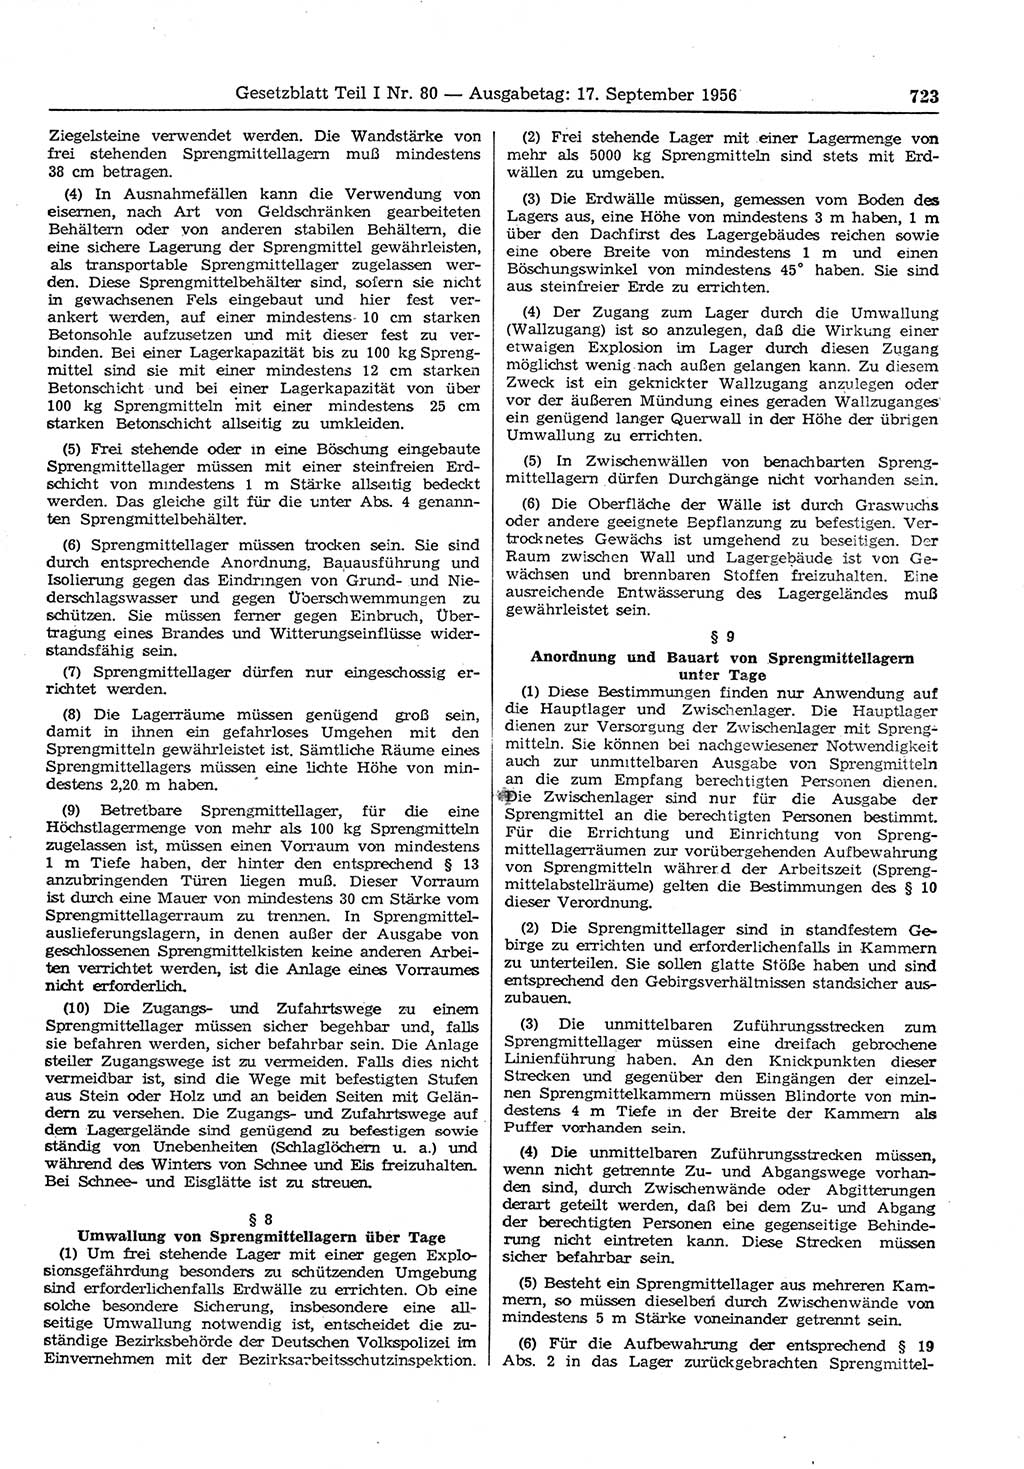 Gesetzblatt (GBl.) der Deutschen Demokratischen Republik (DDR) Teil Ⅰ 1956, Seite 723 (GBl. DDR Ⅰ 1956, S. 723)